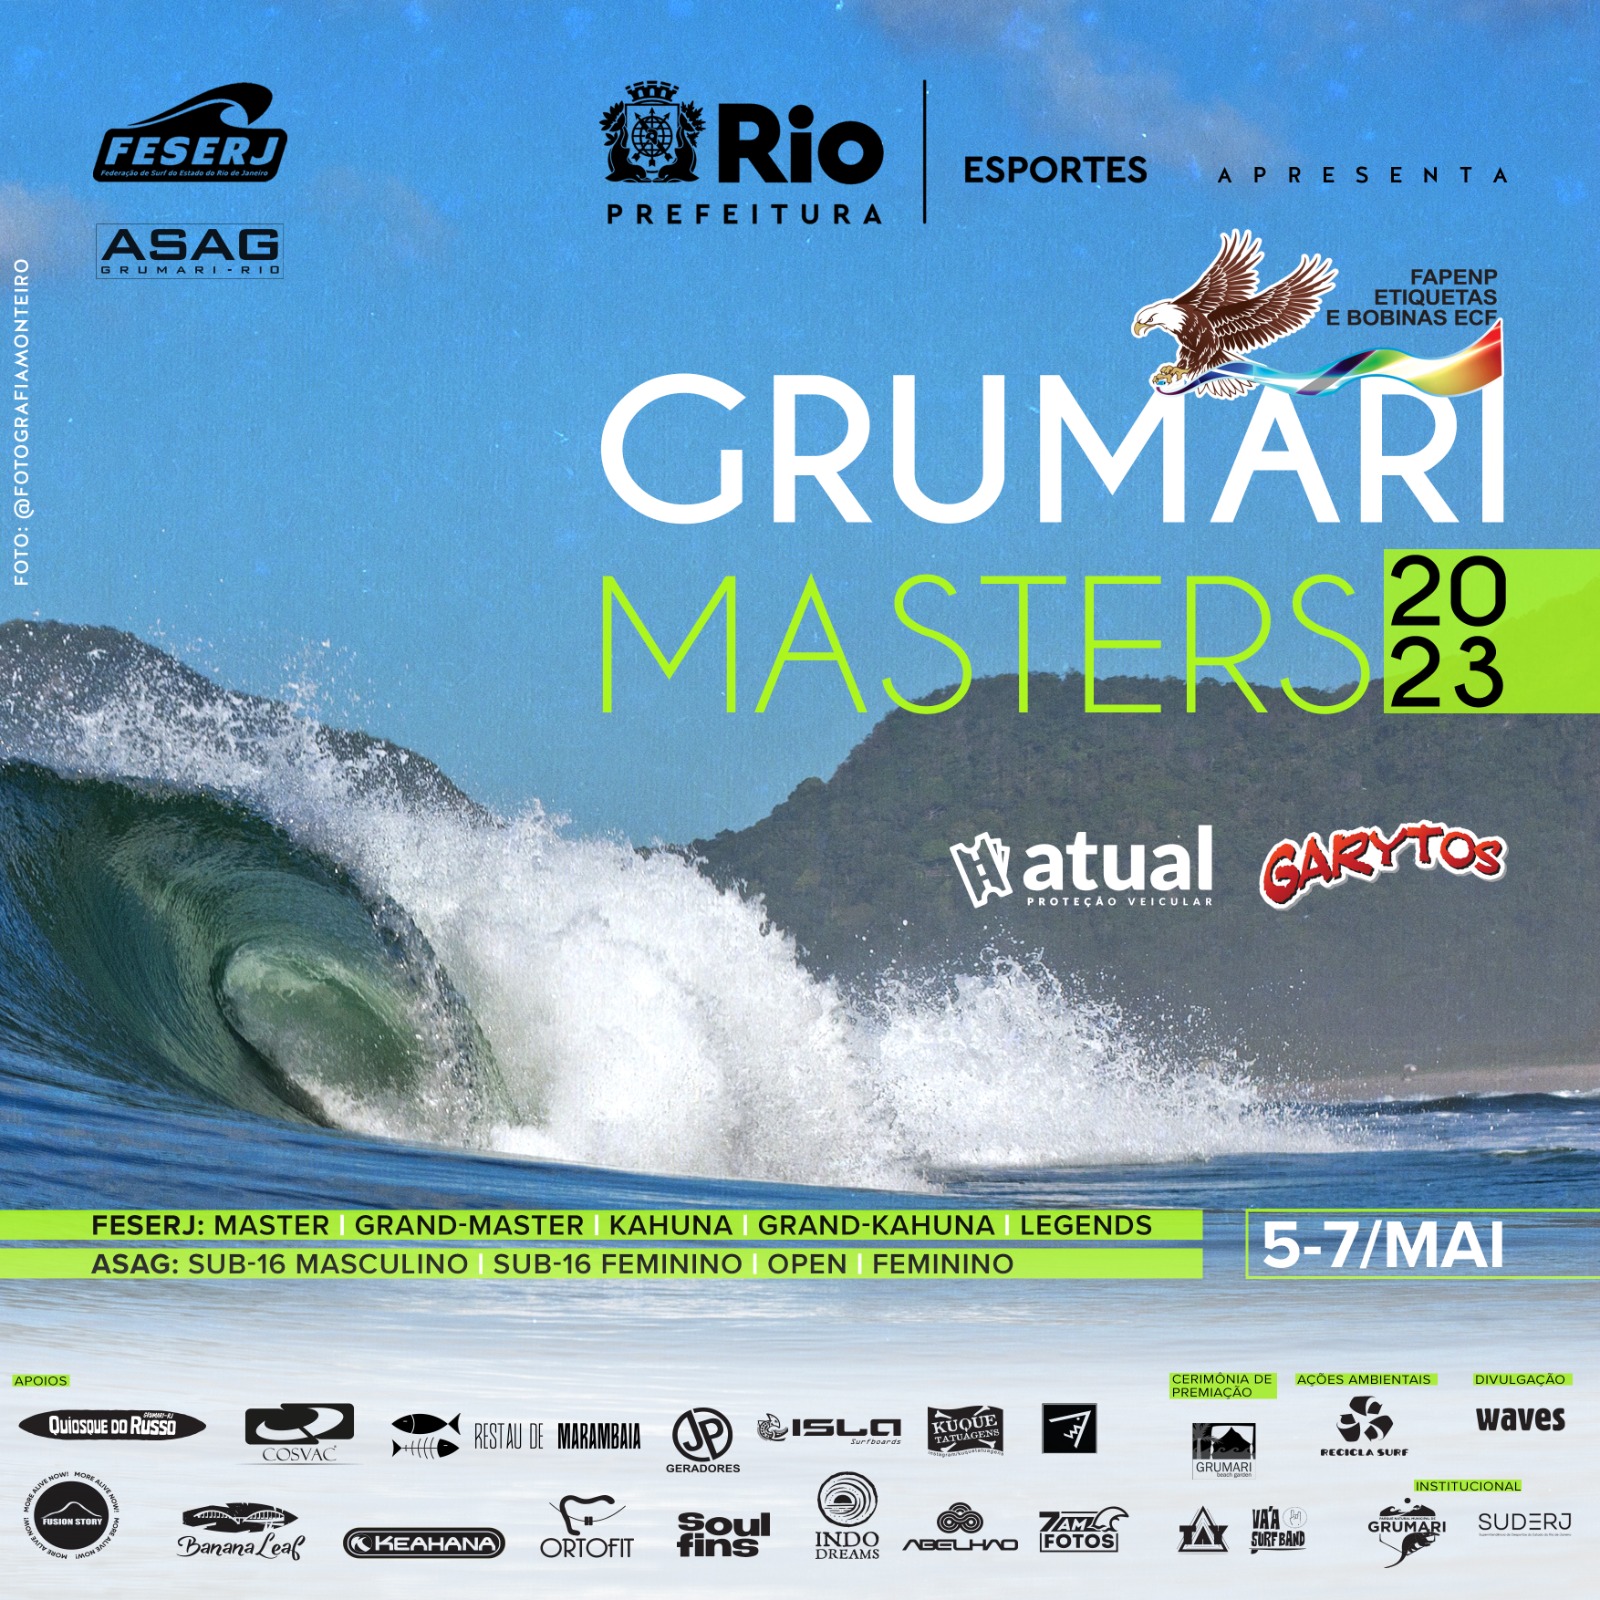 O Grumari Masters 2023 acontece em maio na zona oeste do Rio de Janeiro.